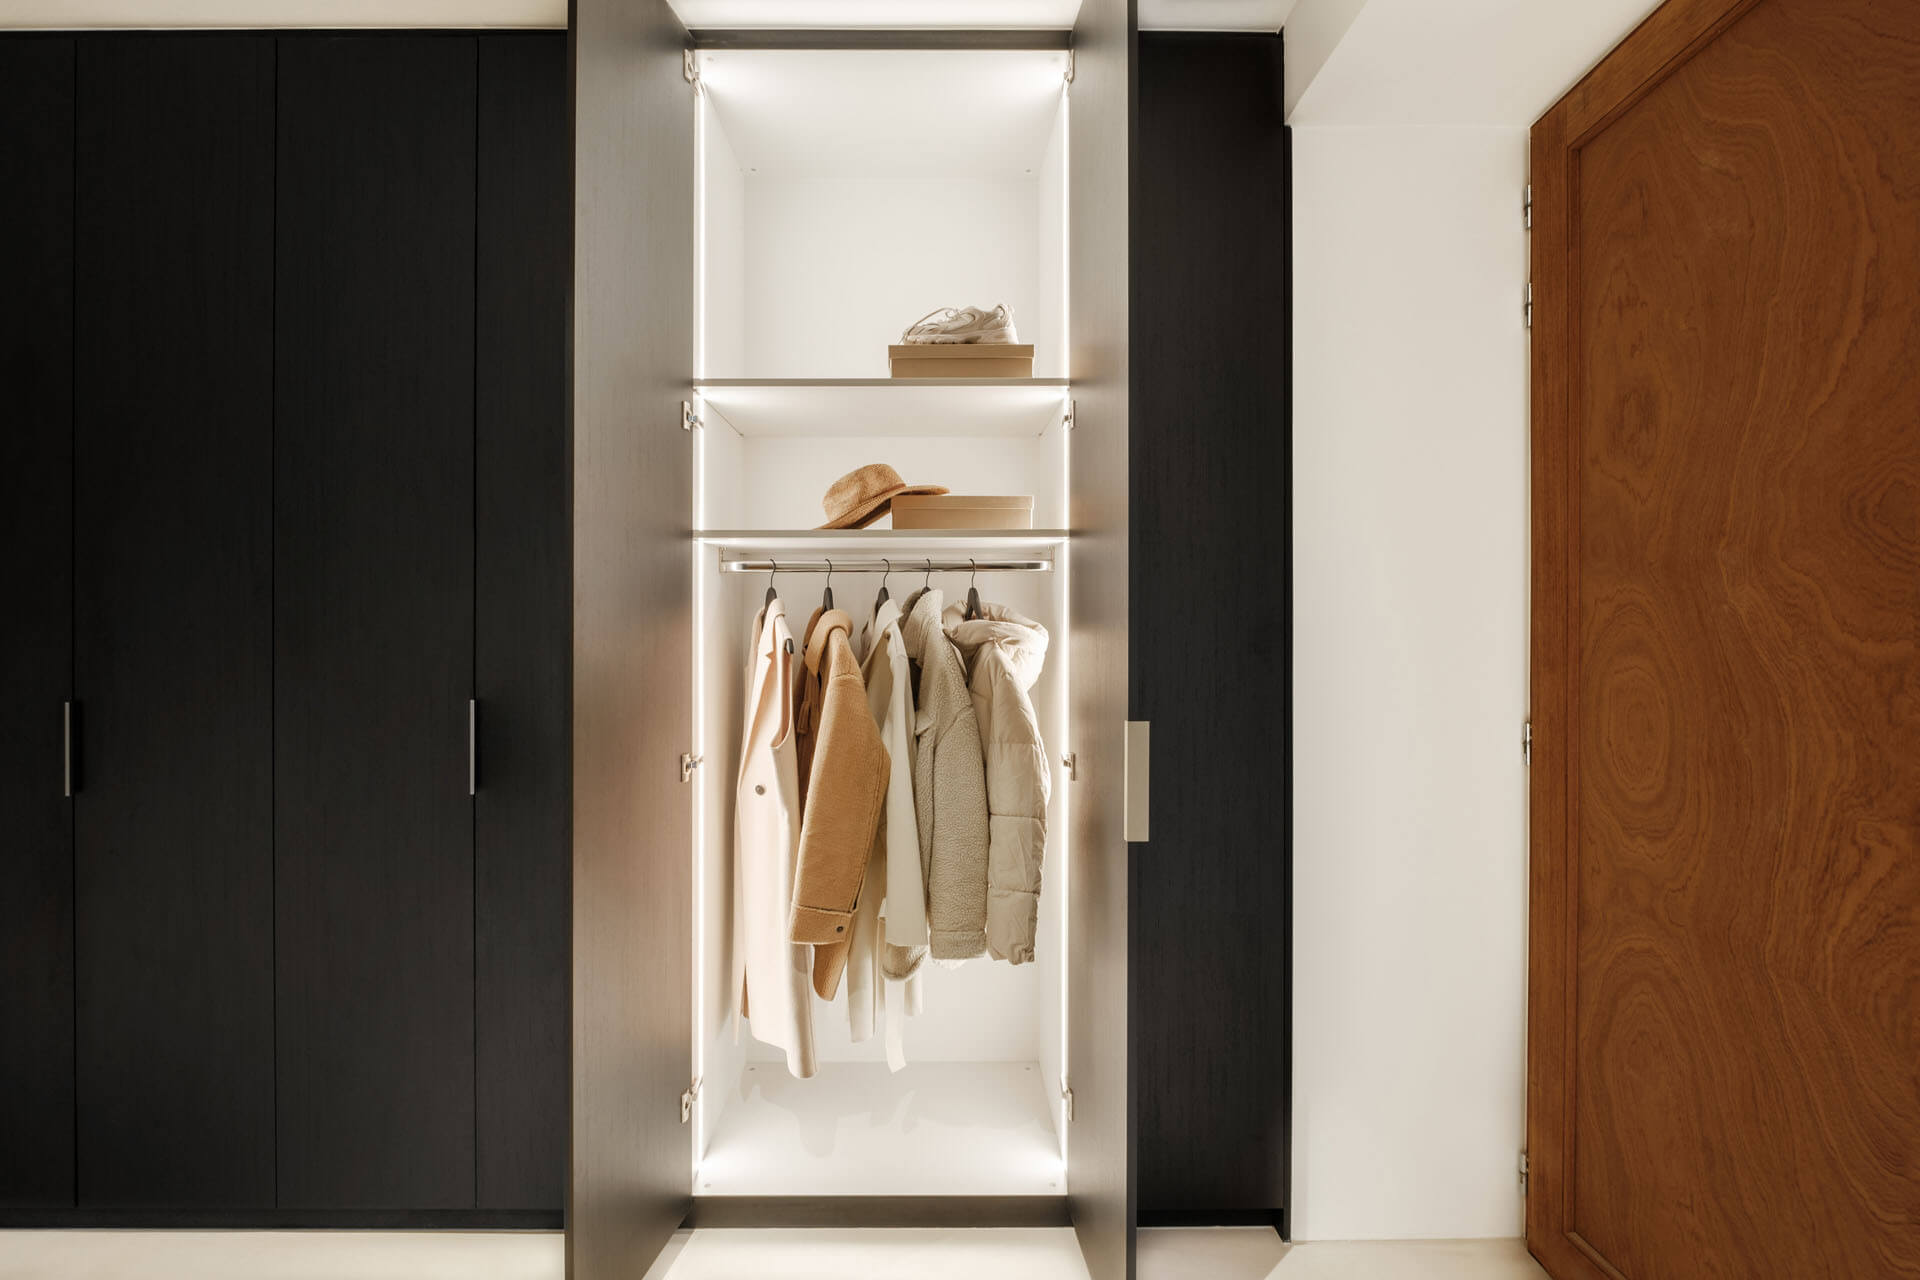 Custom built-in closet in Elegant Black color